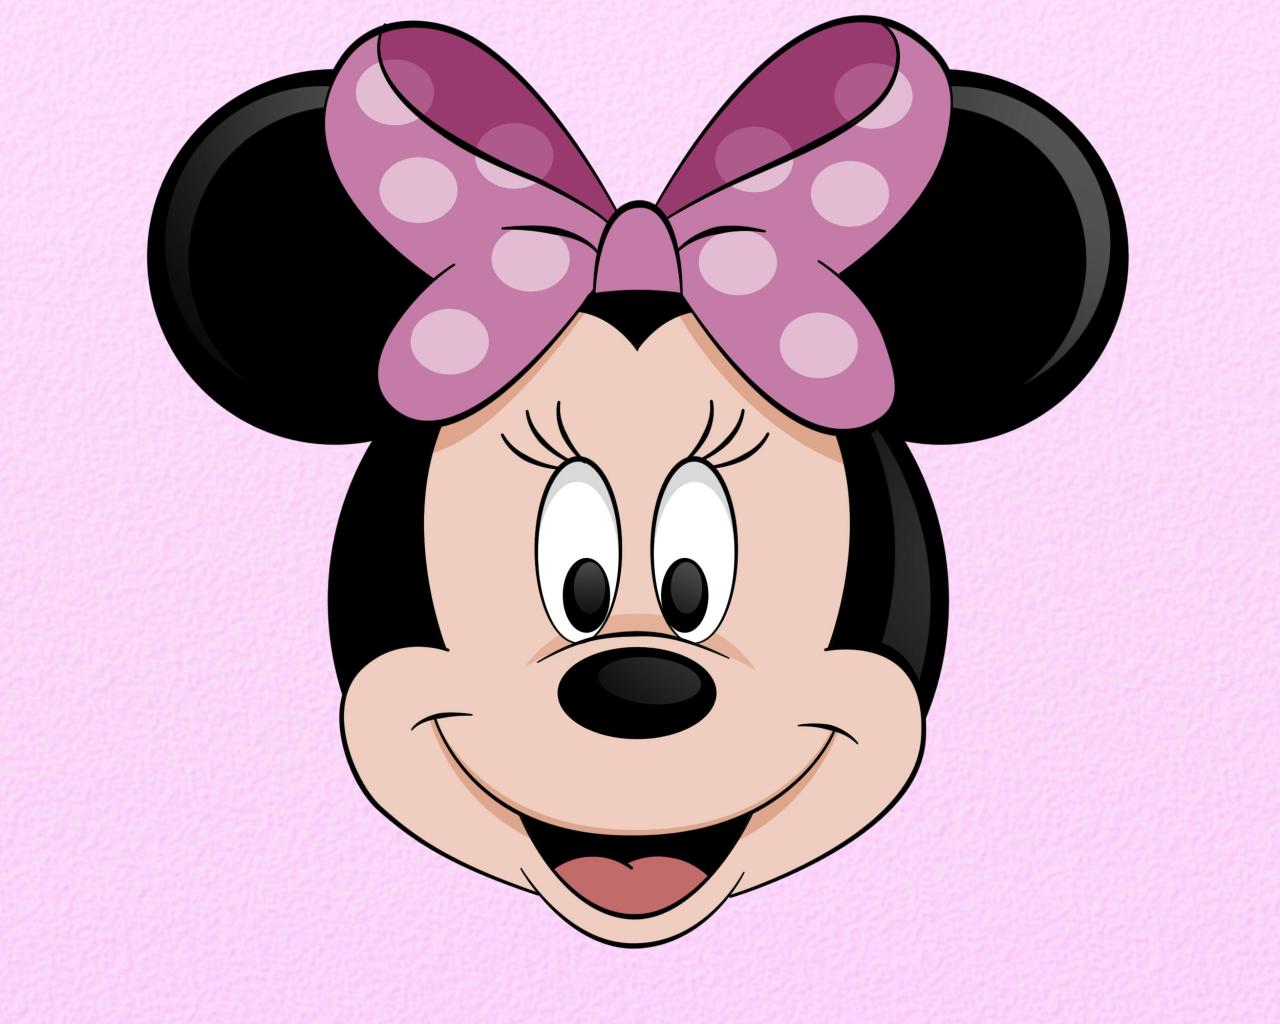 Minnie Mouse fondos de pantalla, fotos, imágenes. Fondo para computadora de Minnie  Mouse. de Minnie Mouse, Personajes - Todo fondos